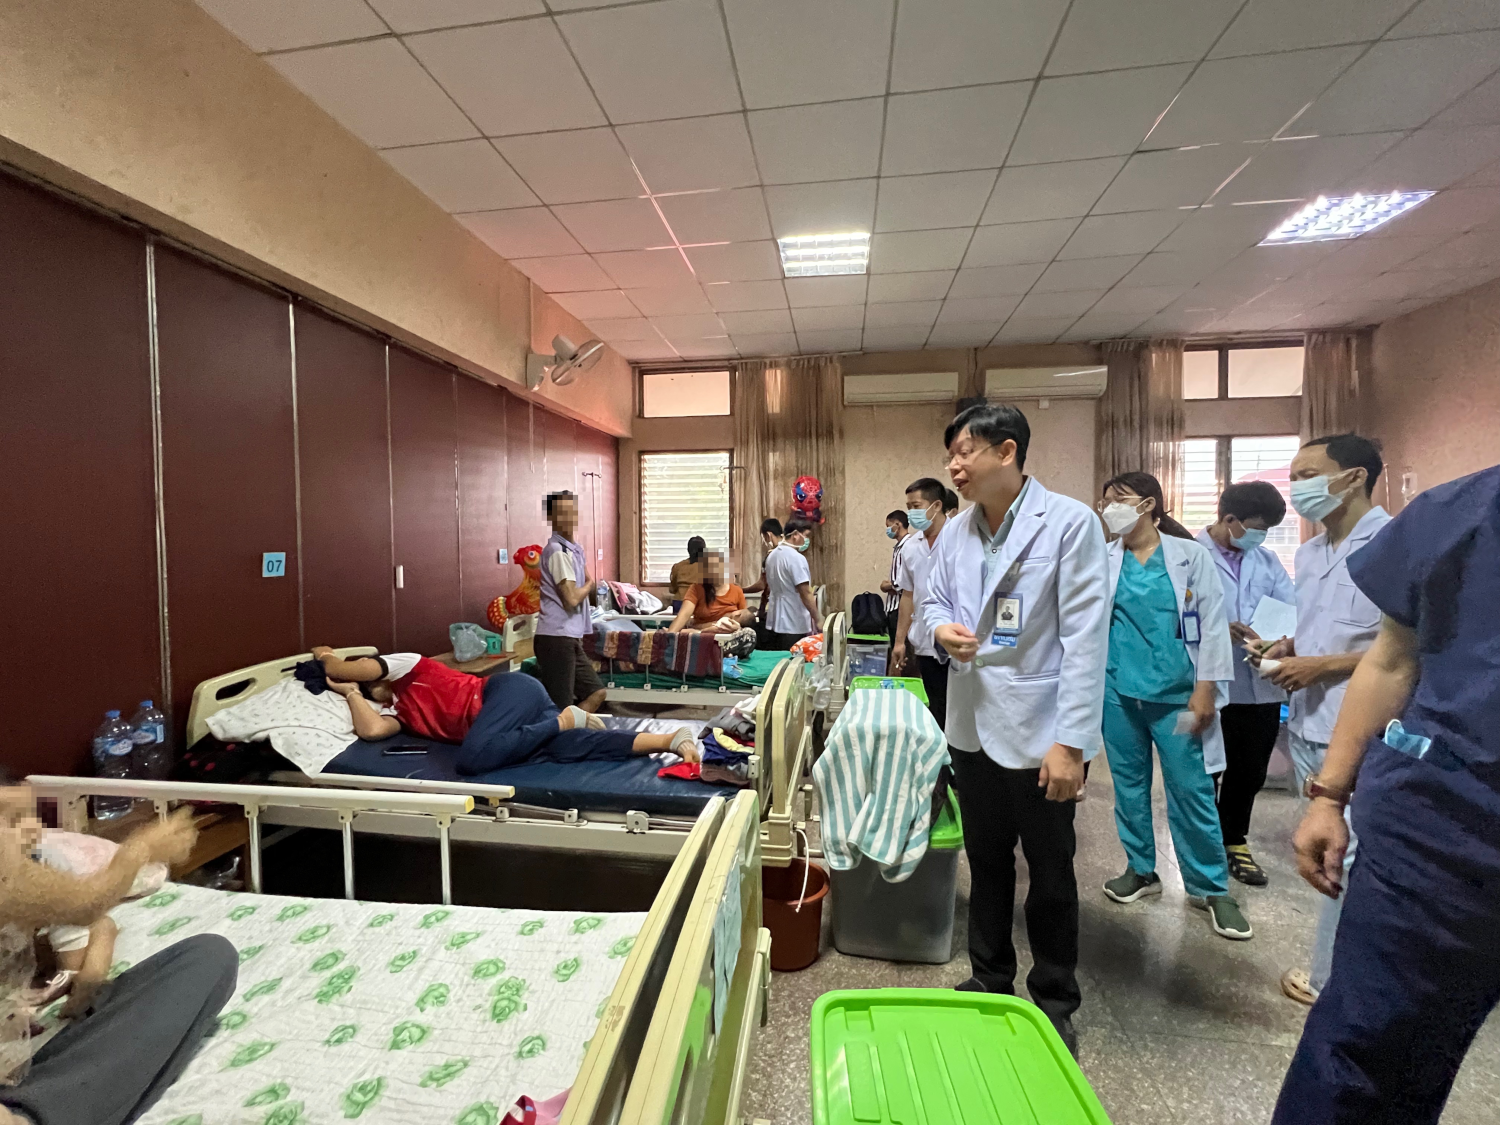 図 1　ラオス国立小児病院の病室の様子と患者を訪問するVongphet医師と研修医たち